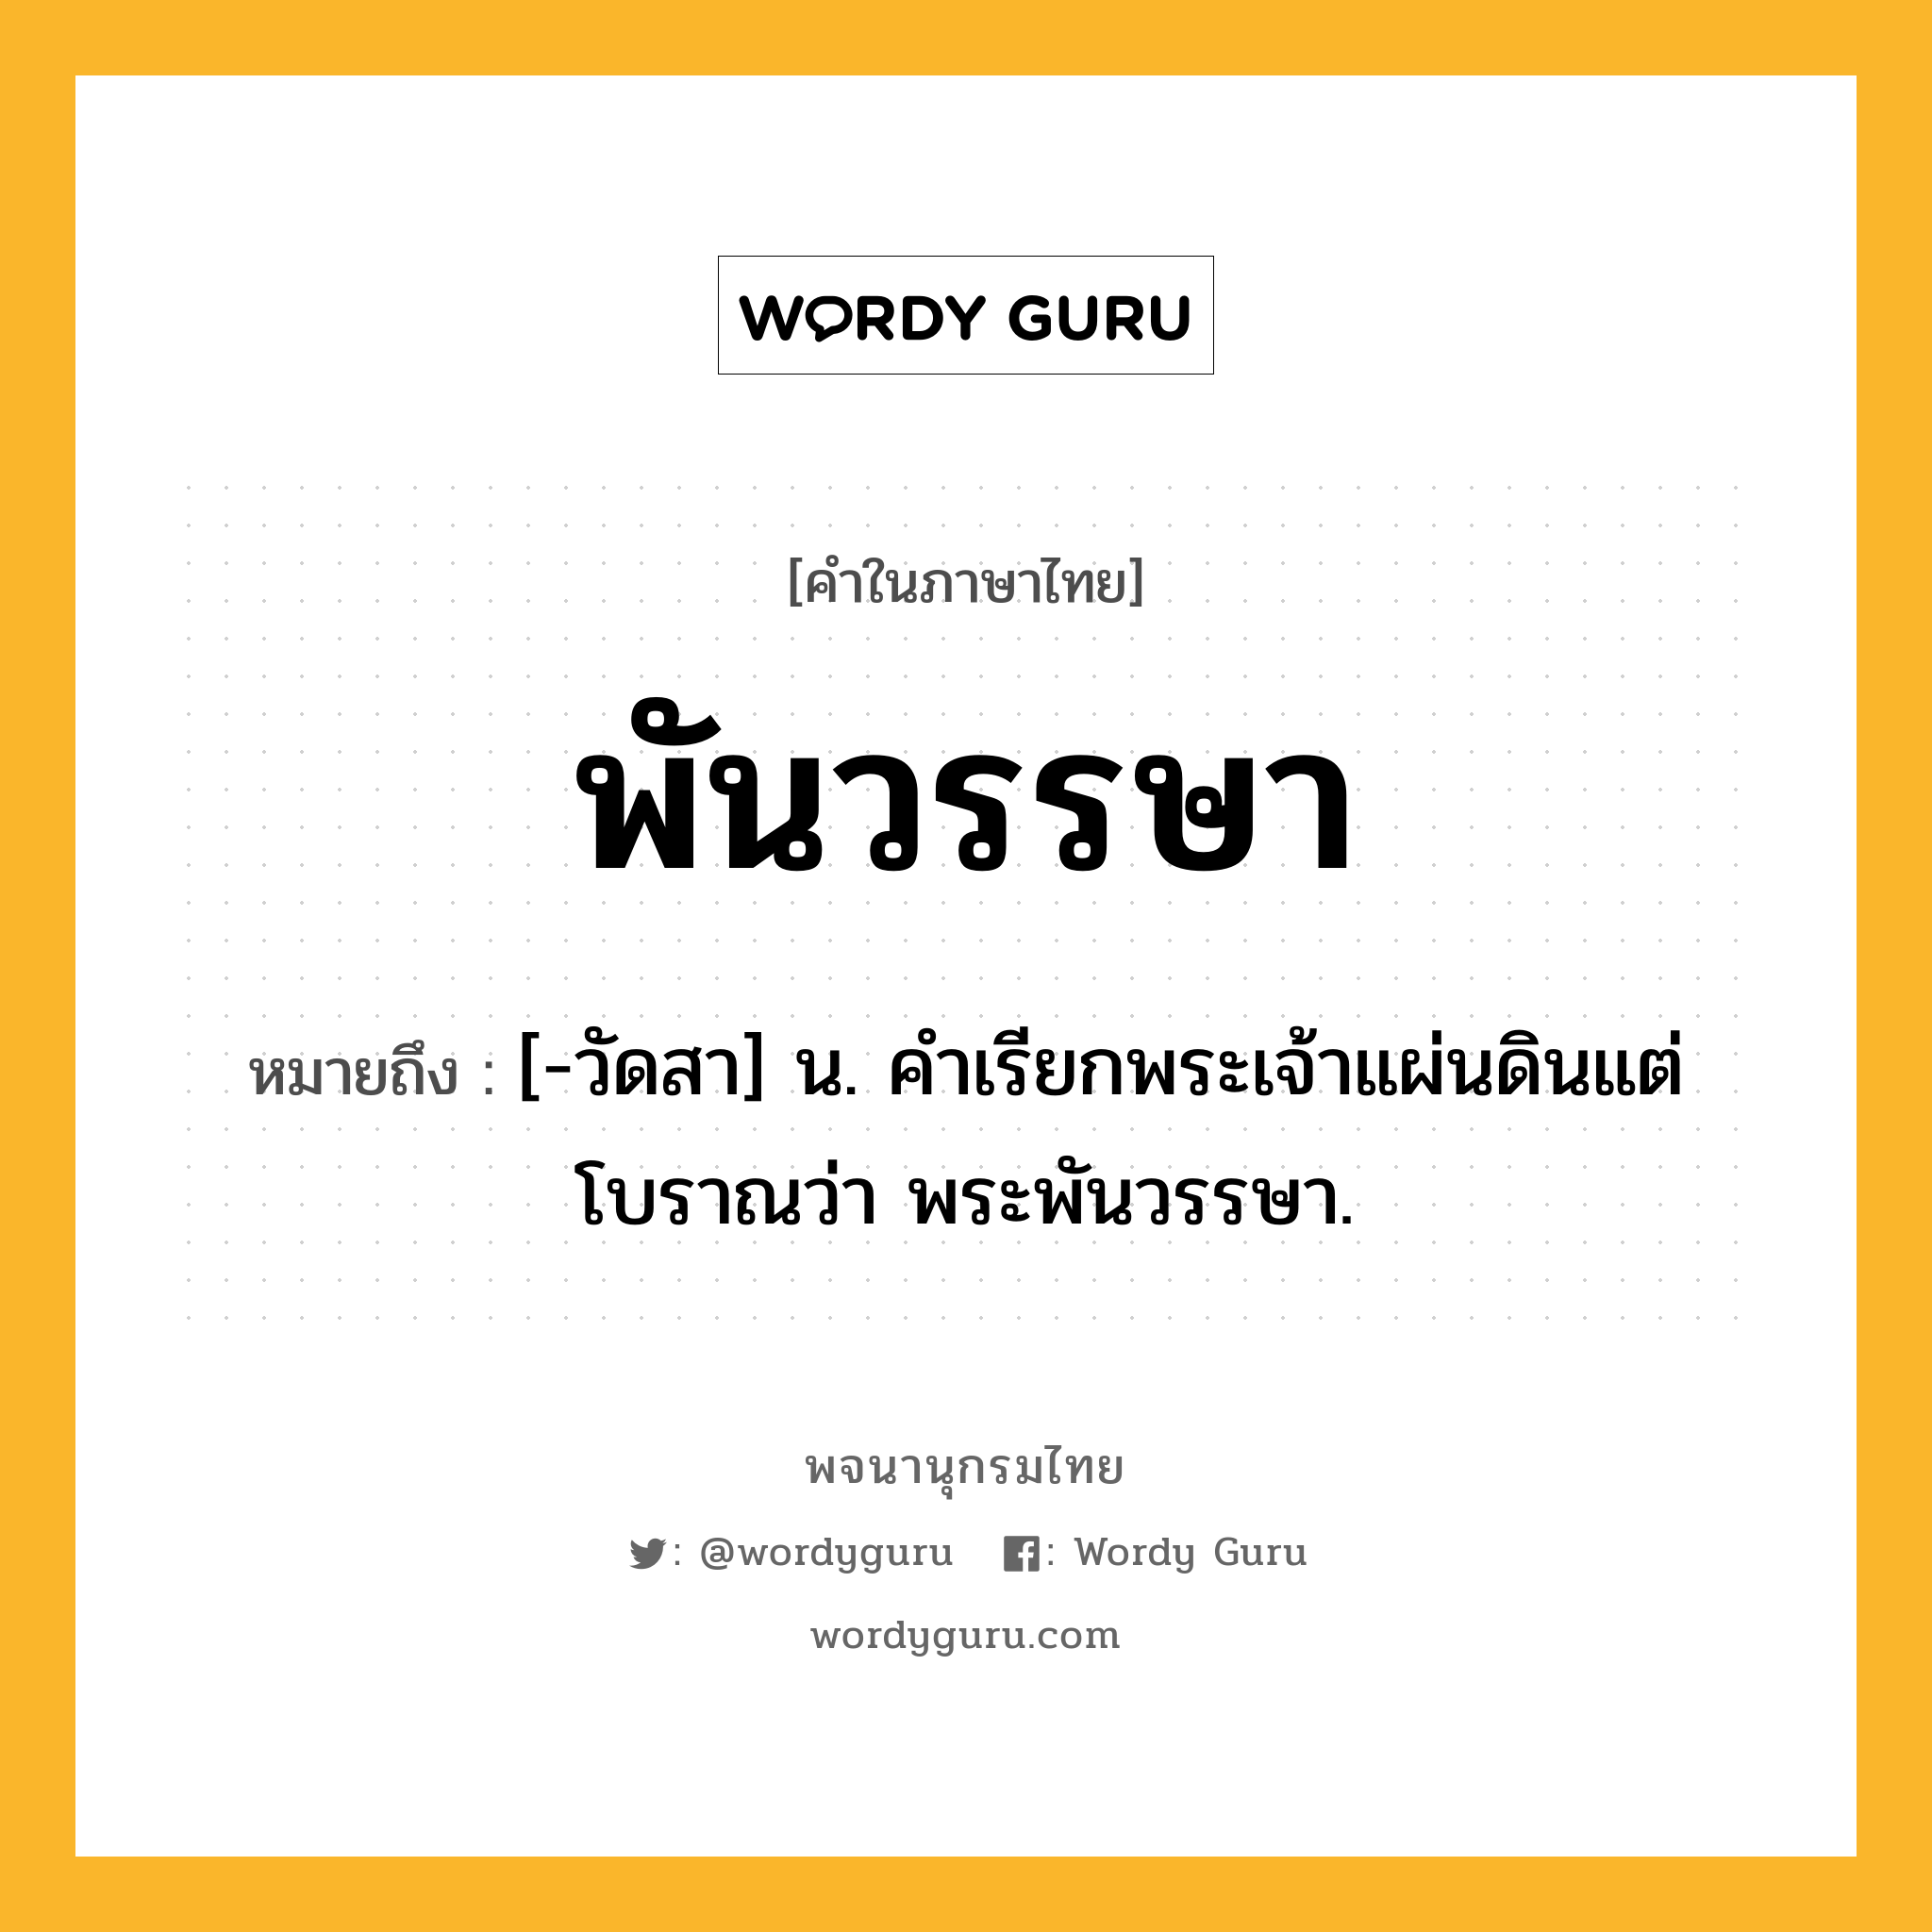 พันวรรษา หมายถึงอะไร?, คำในภาษาไทย พันวรรษา หมายถึง [-วัดสา] น. คําเรียกพระเจ้าแผ่นดินแต่โบราณว่า พระพันวรรษา.